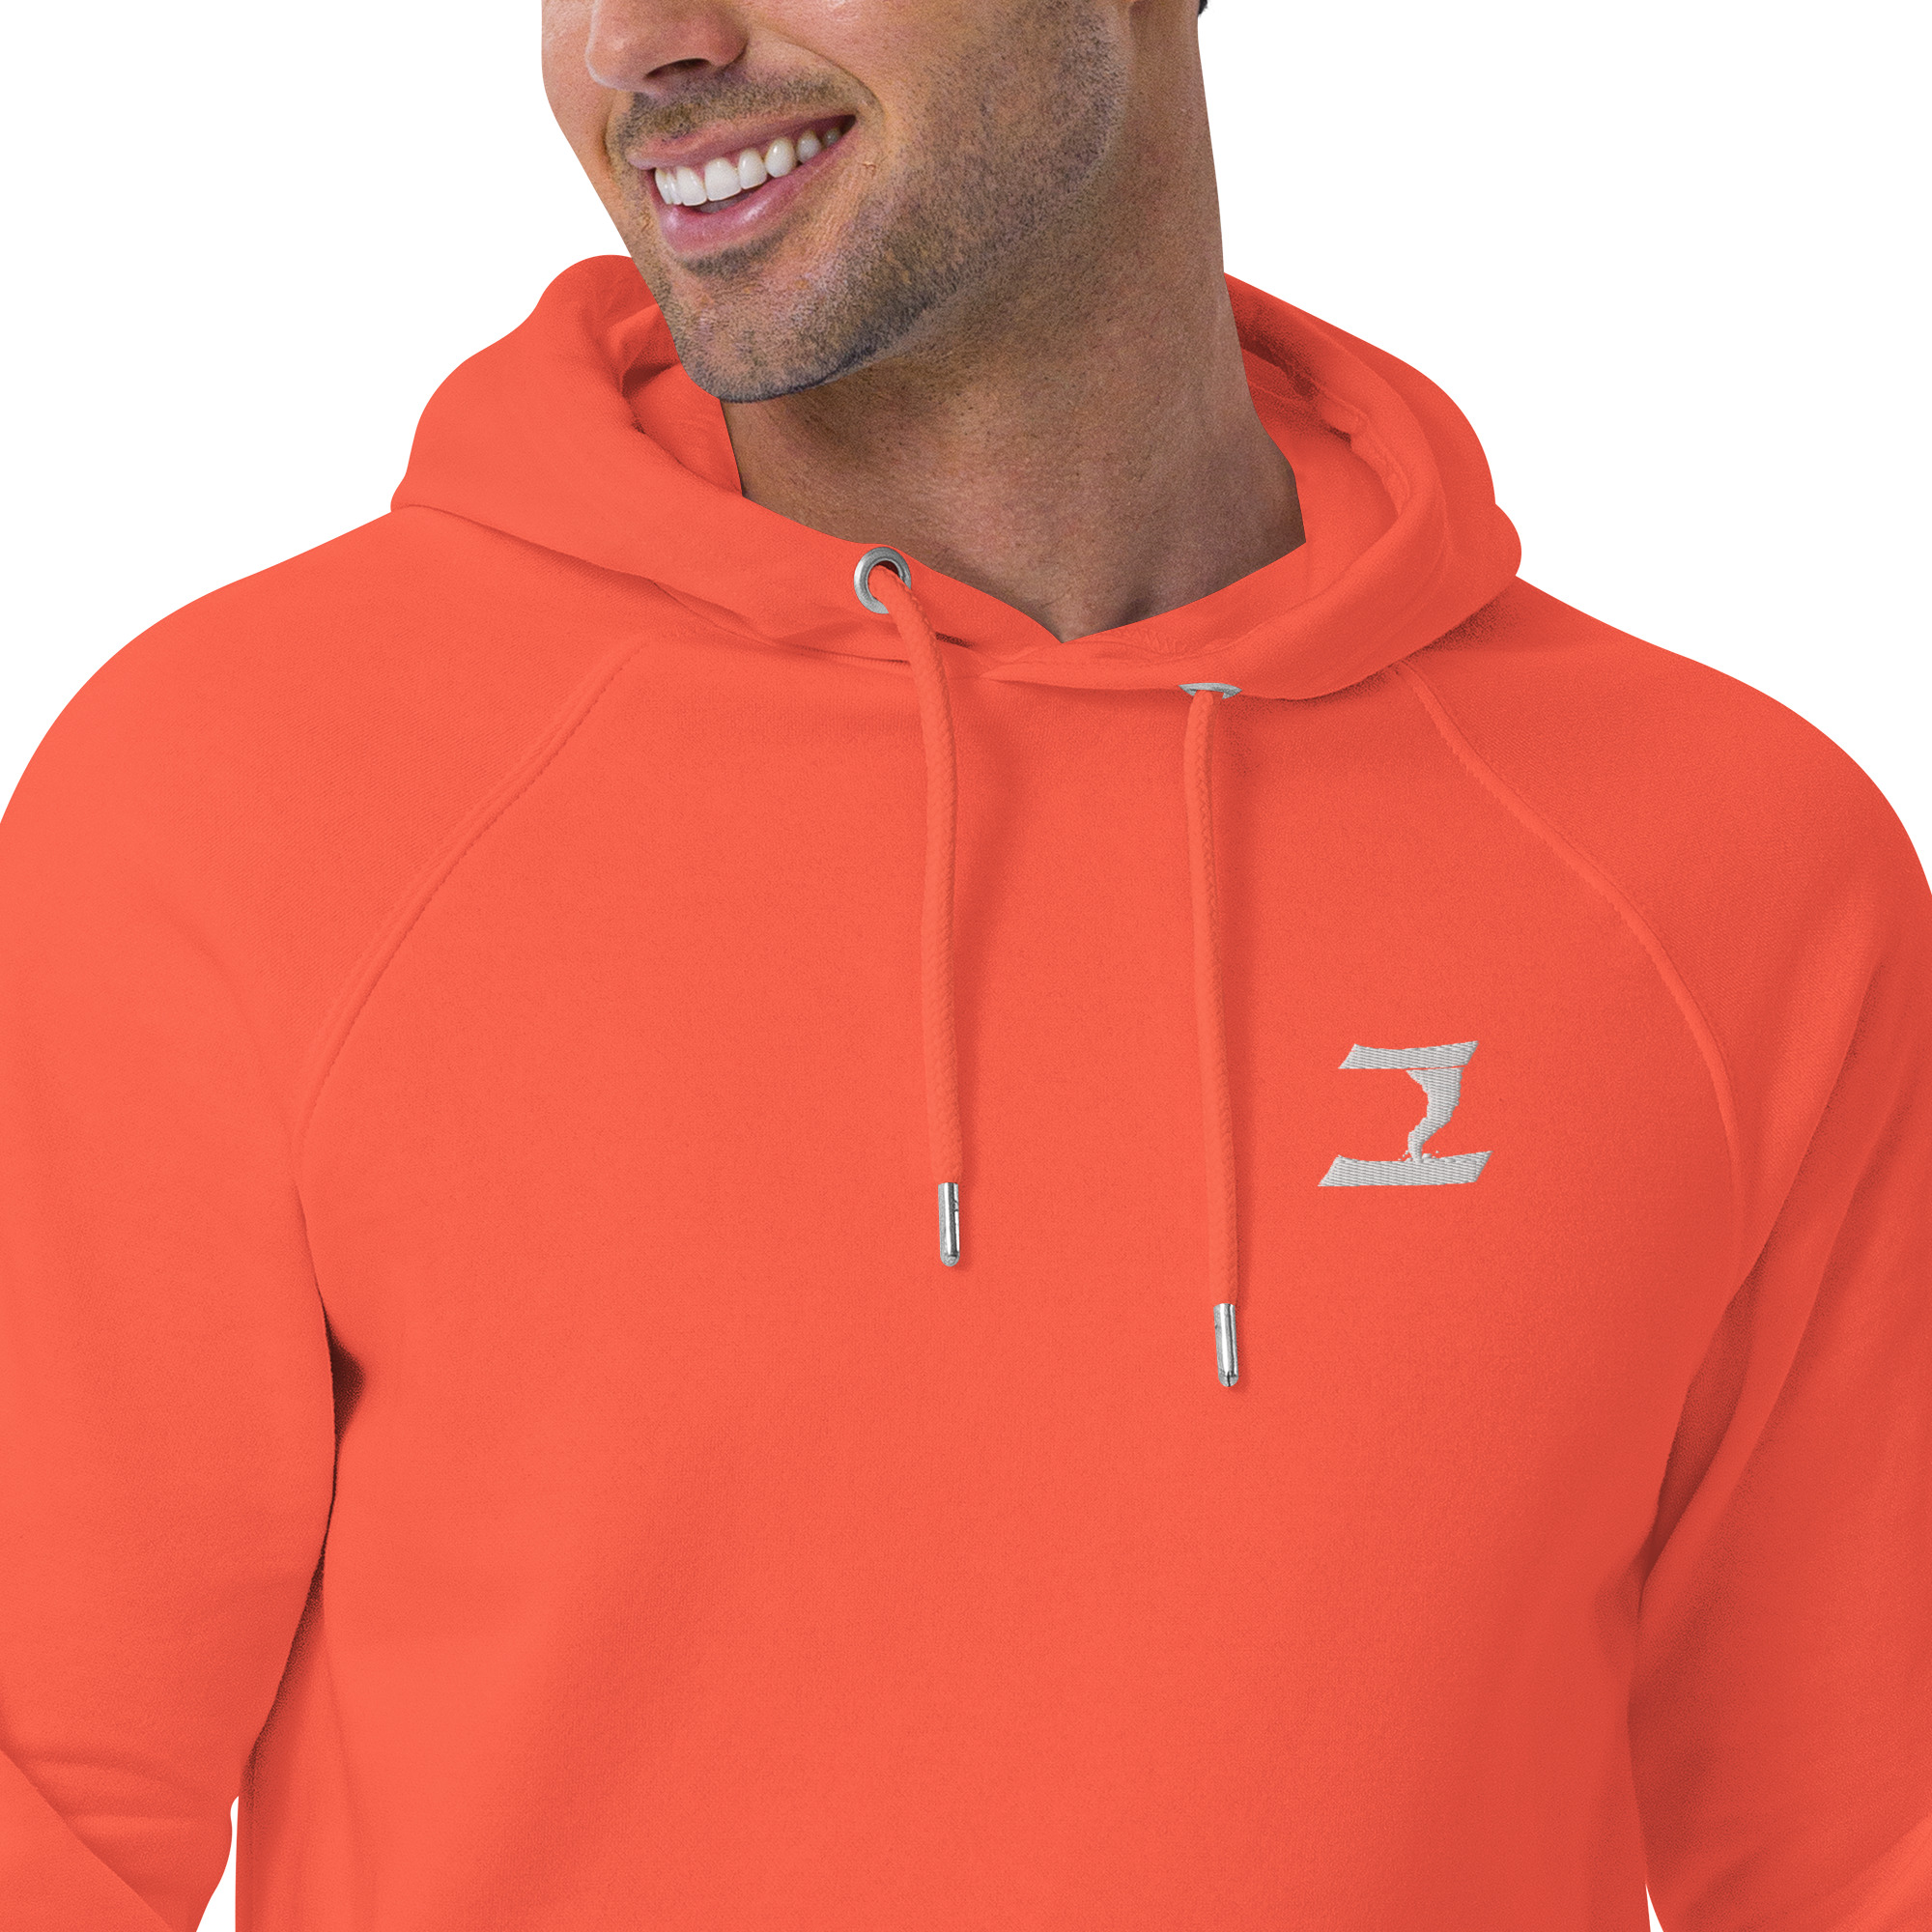 unisex-eco-raglan-hoodie-burnt-orange-zoomed-in-2-631695eb09b14.jpg